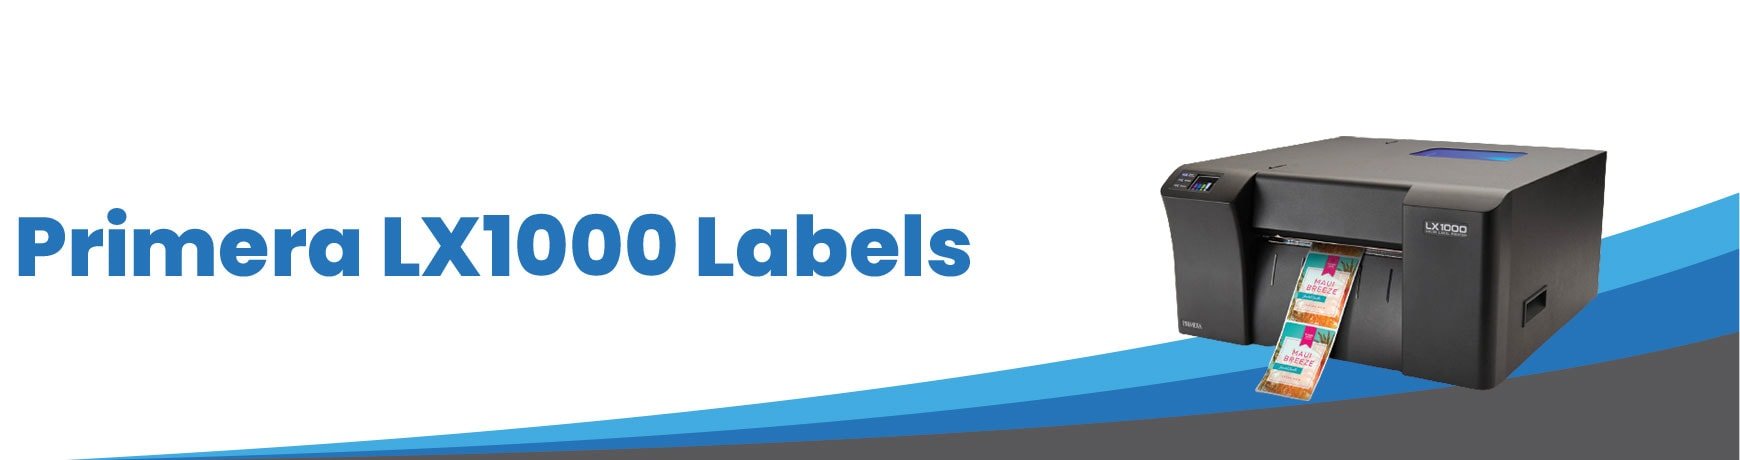 Primera LX1000 Labels